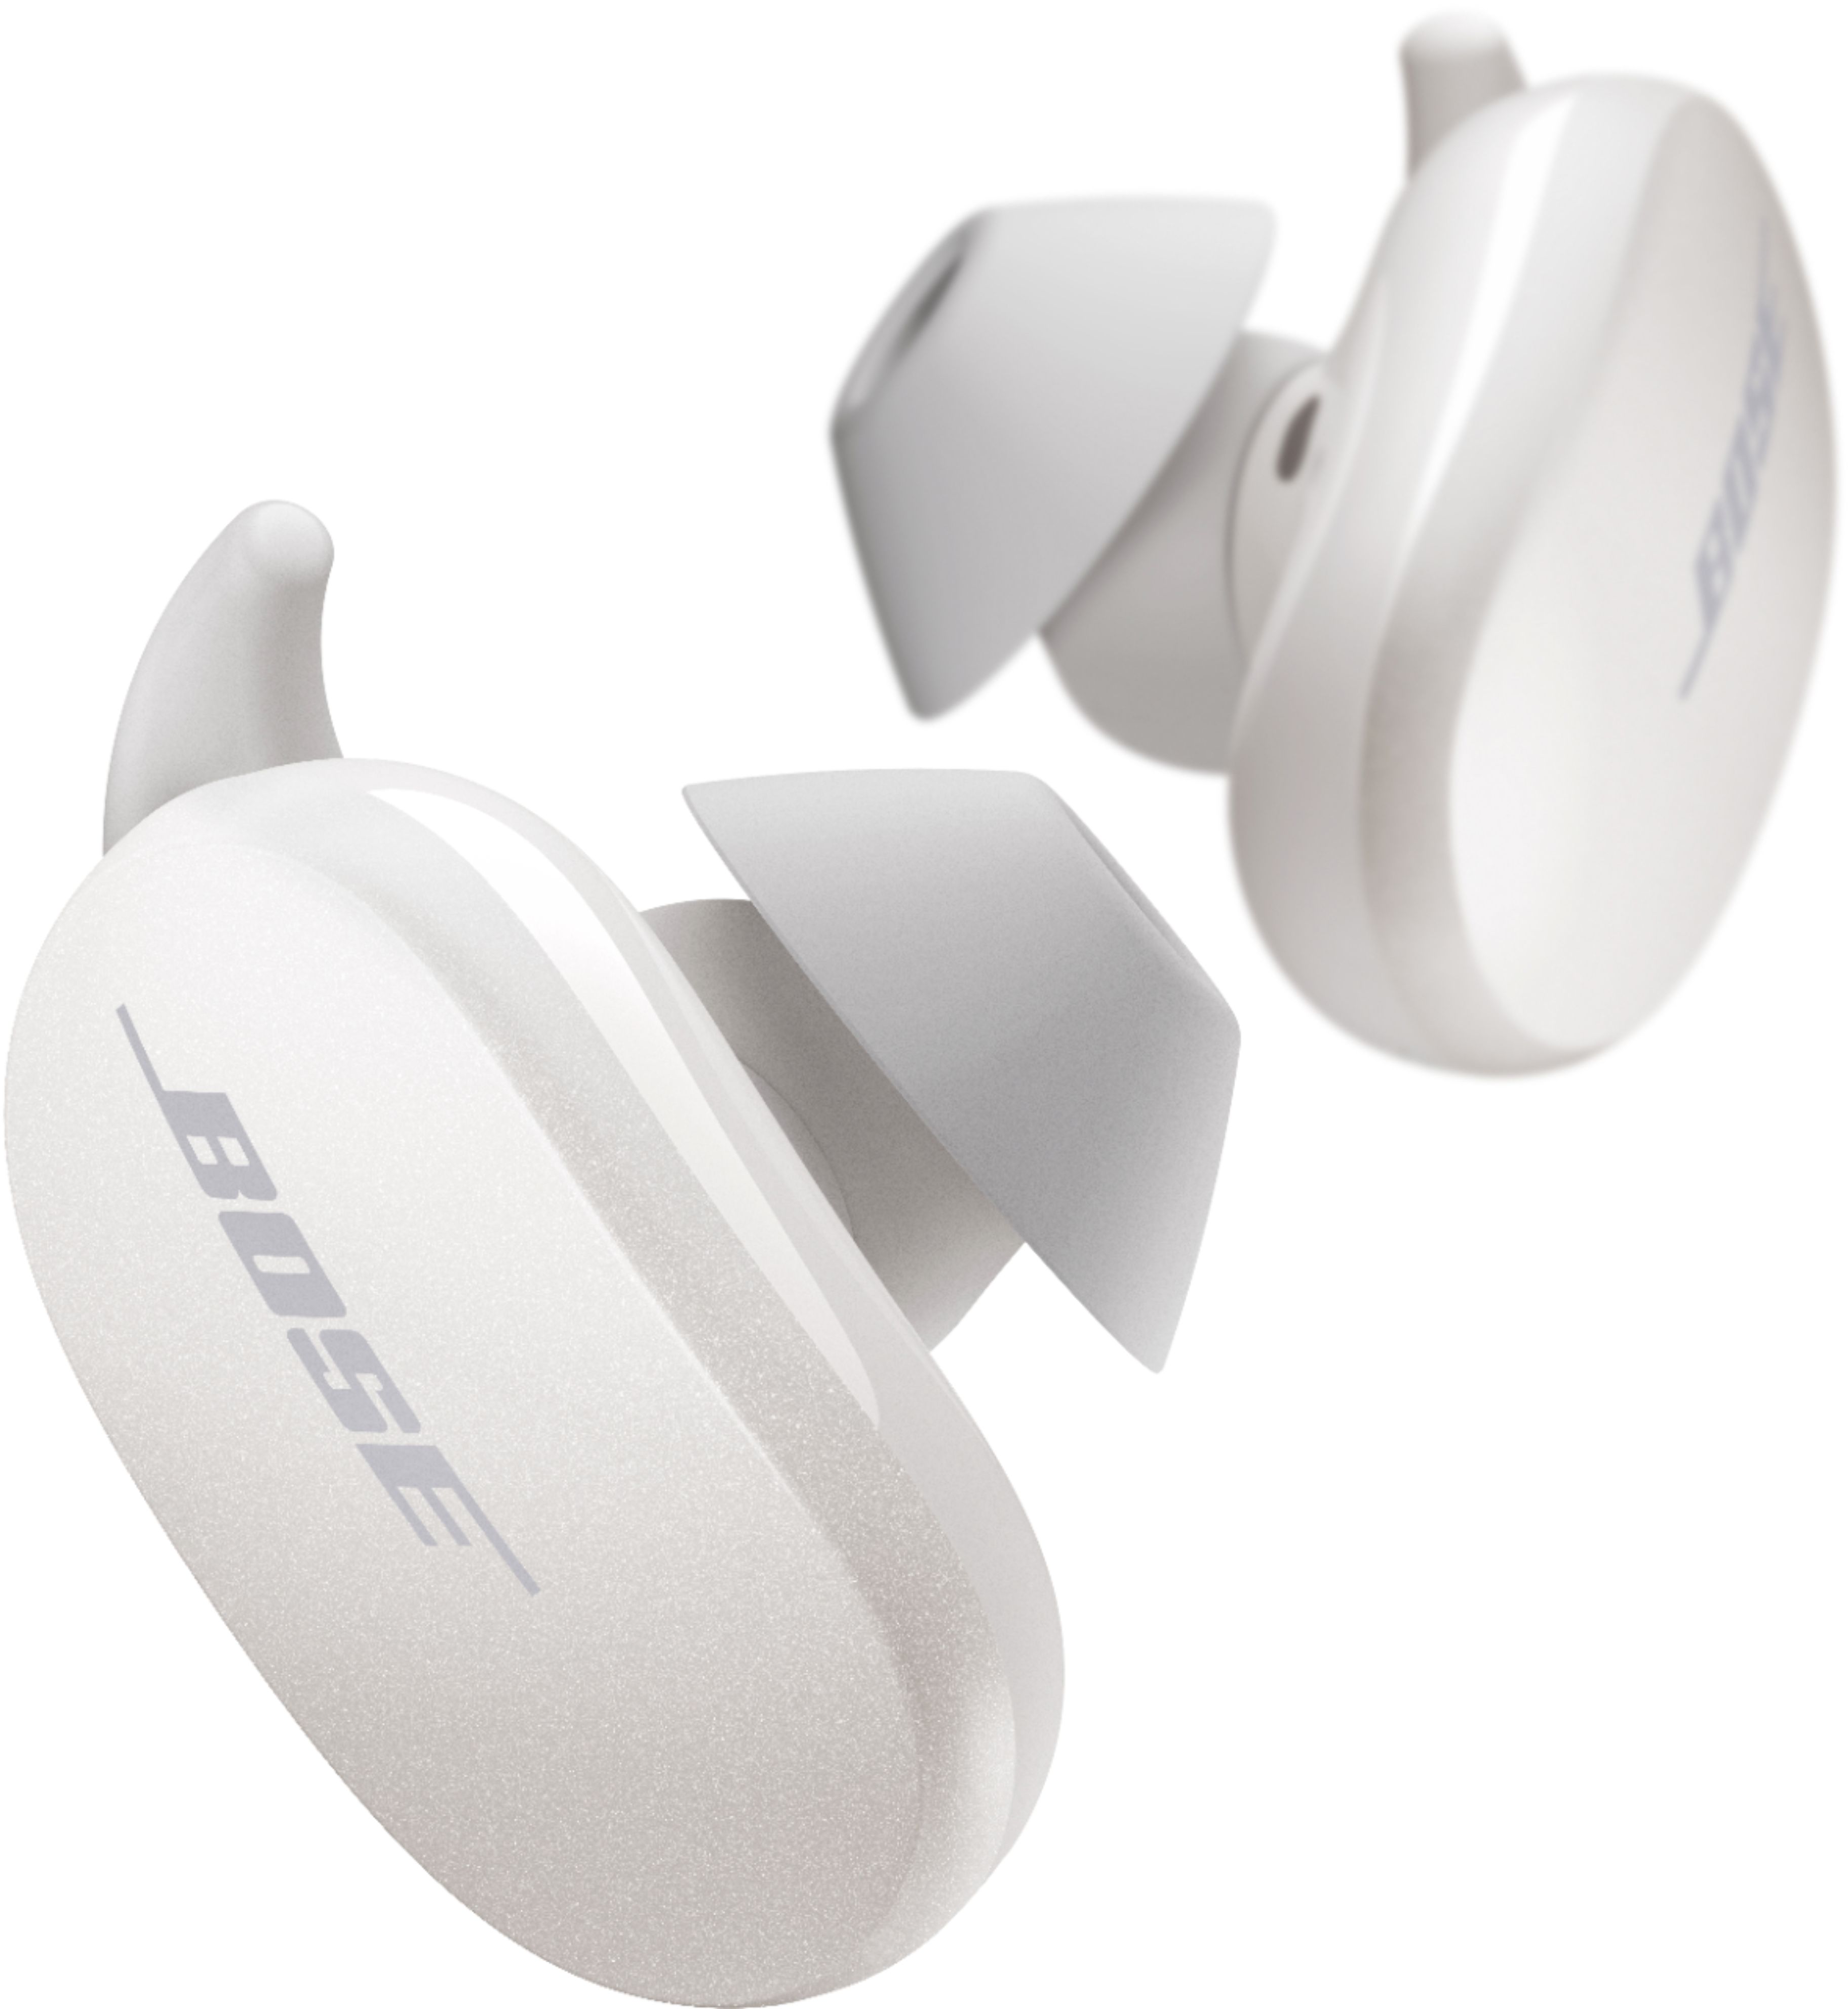 オーディオ機器 イヤフォン Bose QuietComfort Earbuds True Wireless Noise Cancelling In-Ear Earbuds  Soapstone 831262-0020 - Best Buy